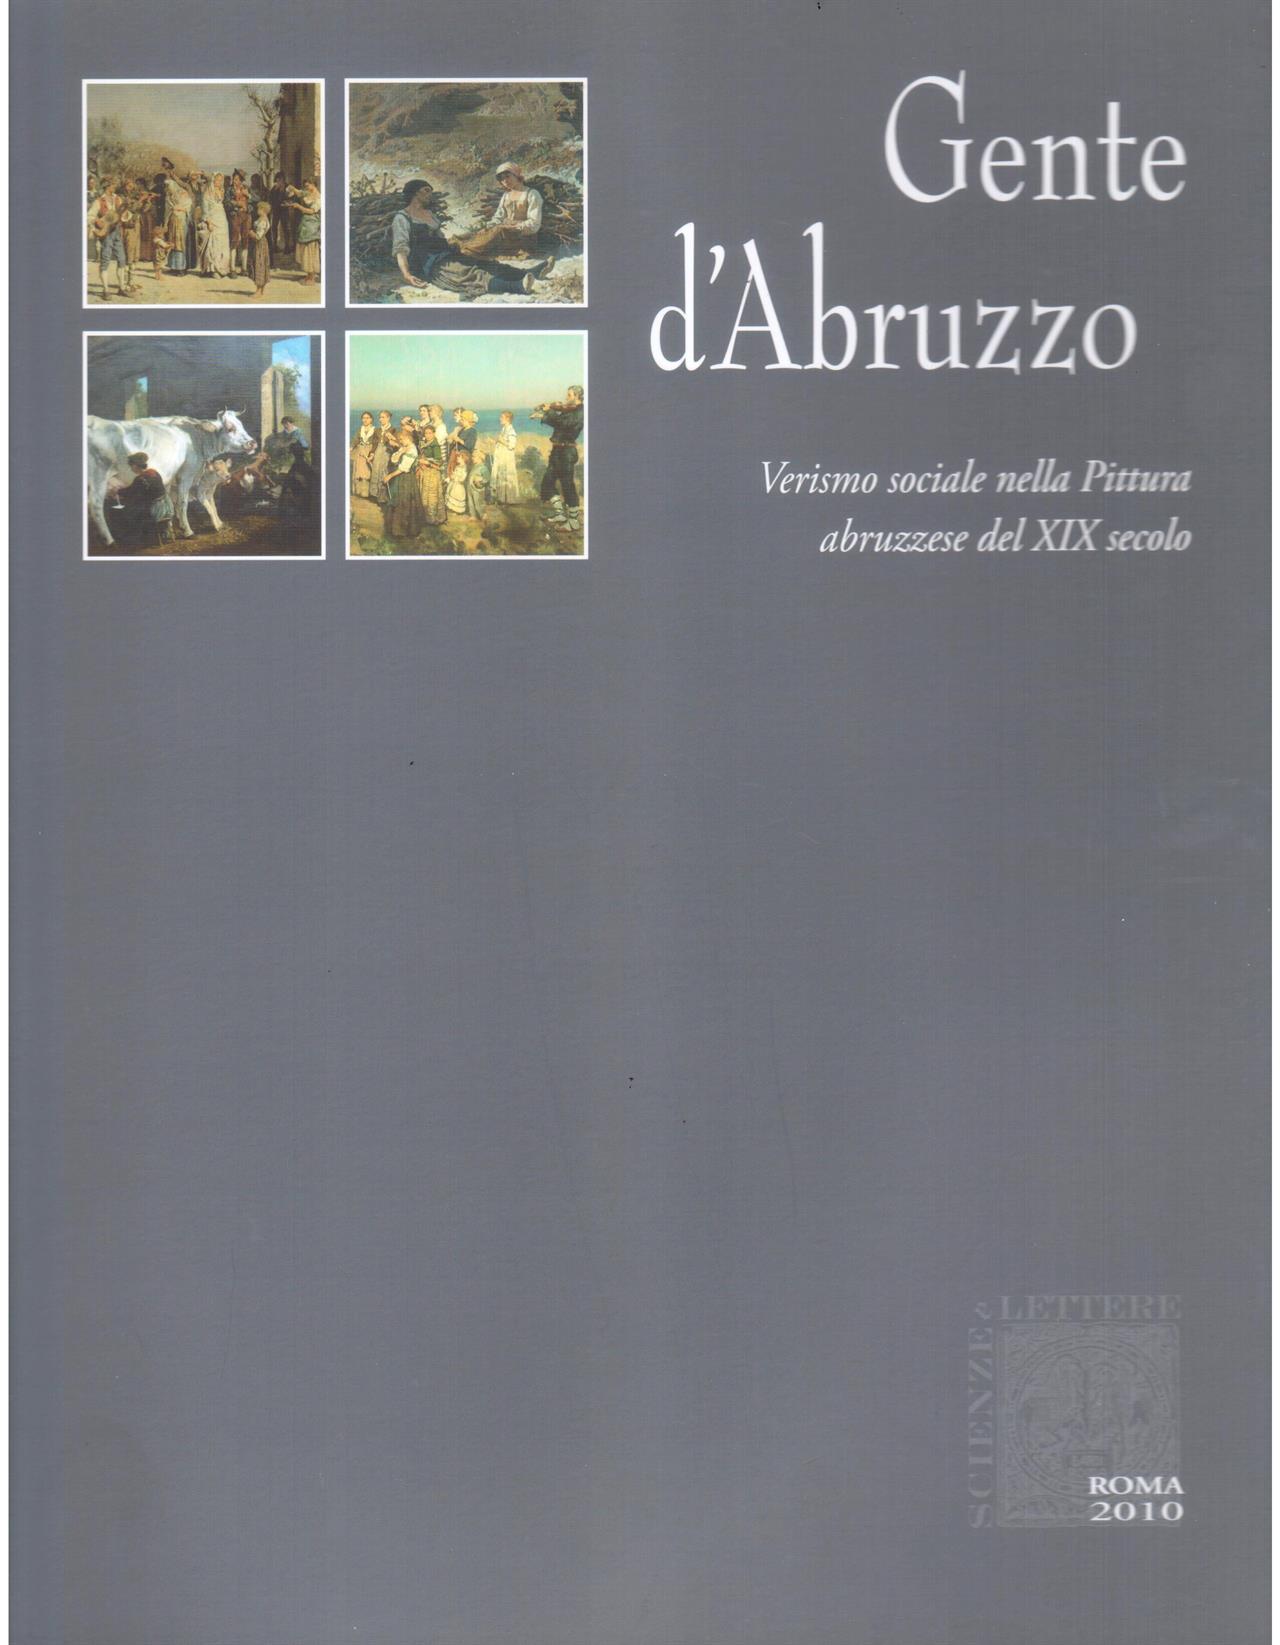 Gente d' Abruzzo. Verismo sociale nella Pittura abruzzese del XIX secolo